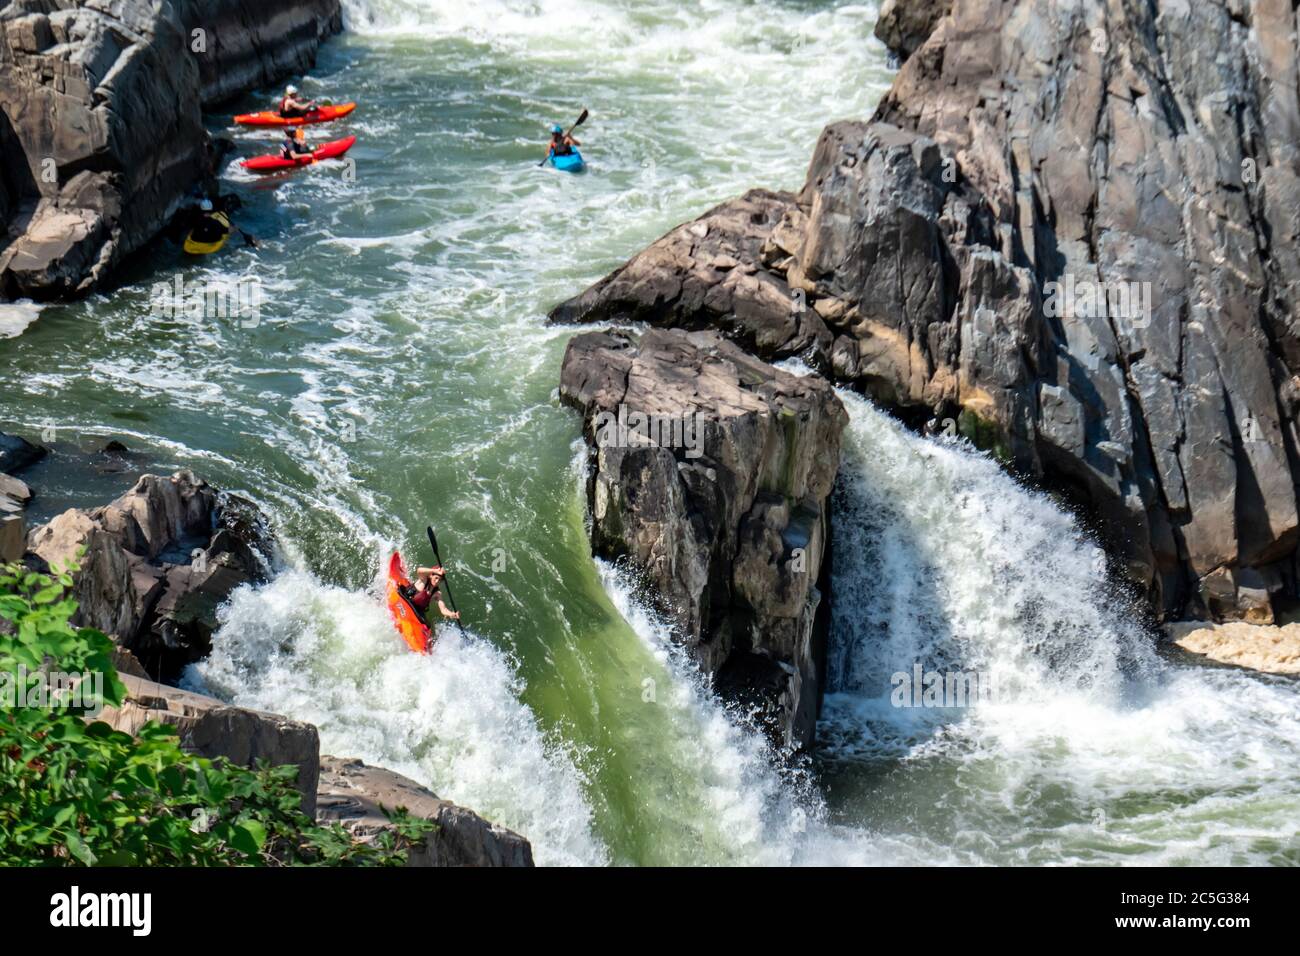 Tapfere Flussenthusiasten paddeln ihre Kajaks durch den Potomac River. Extremsport und Wildwasser-Rafting in schnellen, gefährlichen Schluchten. Stockfoto